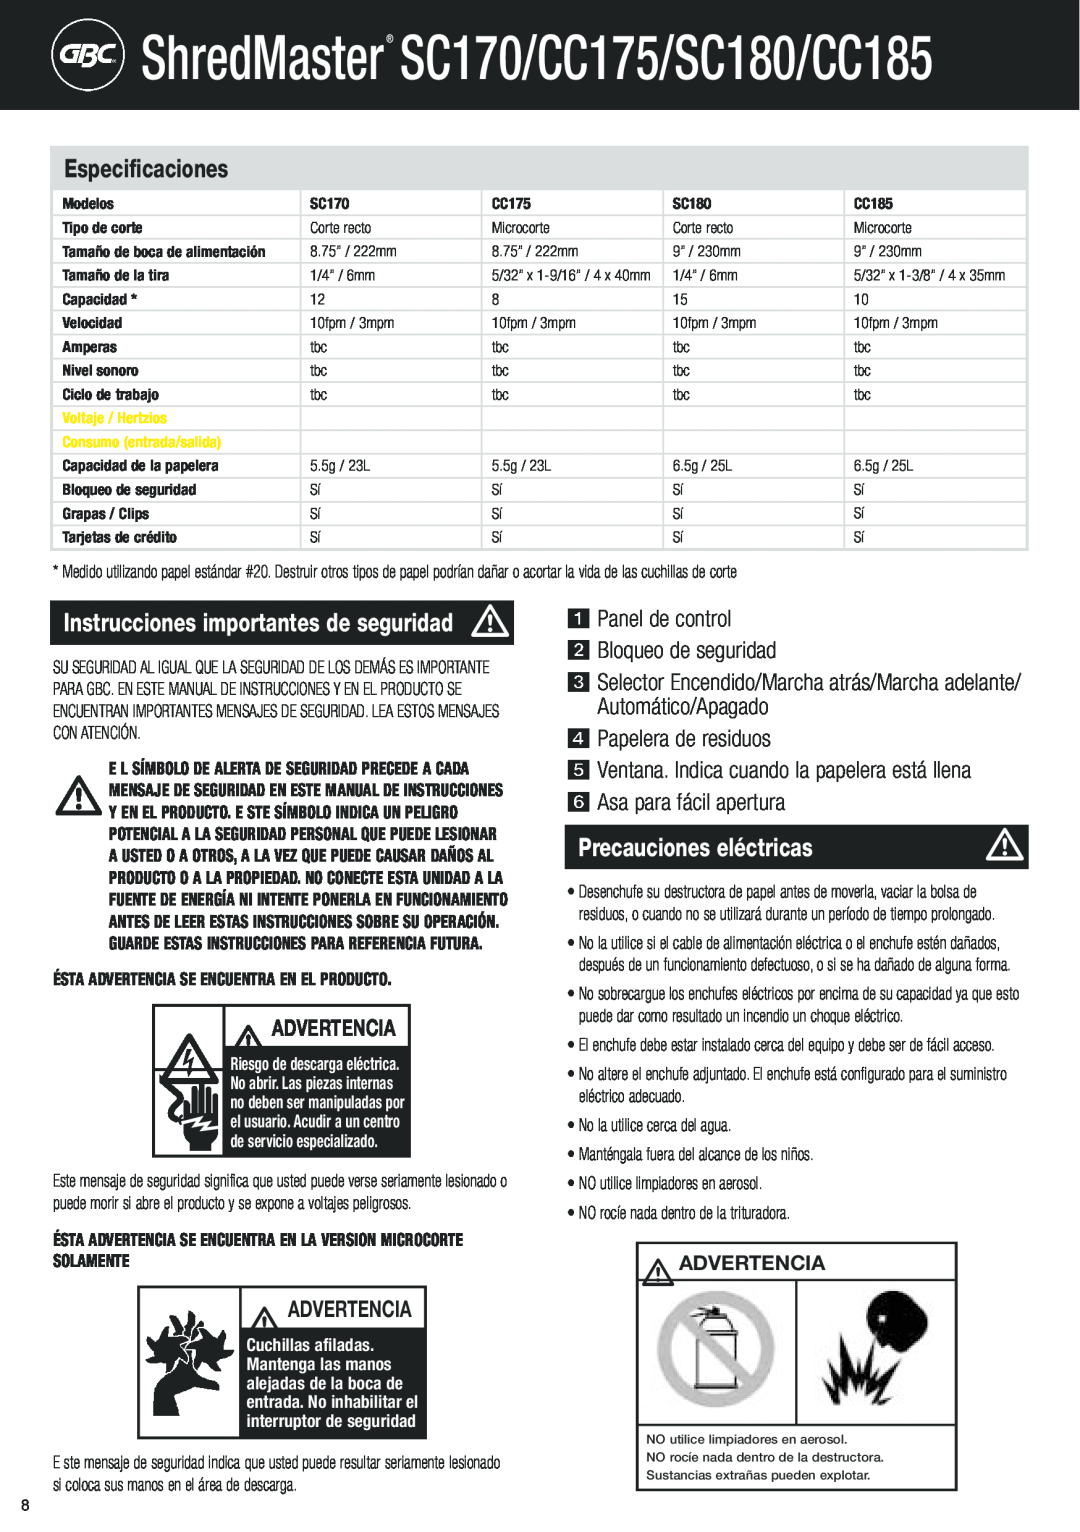 GBC Precauciones eléctricas, ShredMaster SC170/CC175/SC180/CC185, Instrucciones importantes de seguridad, Advertencia 